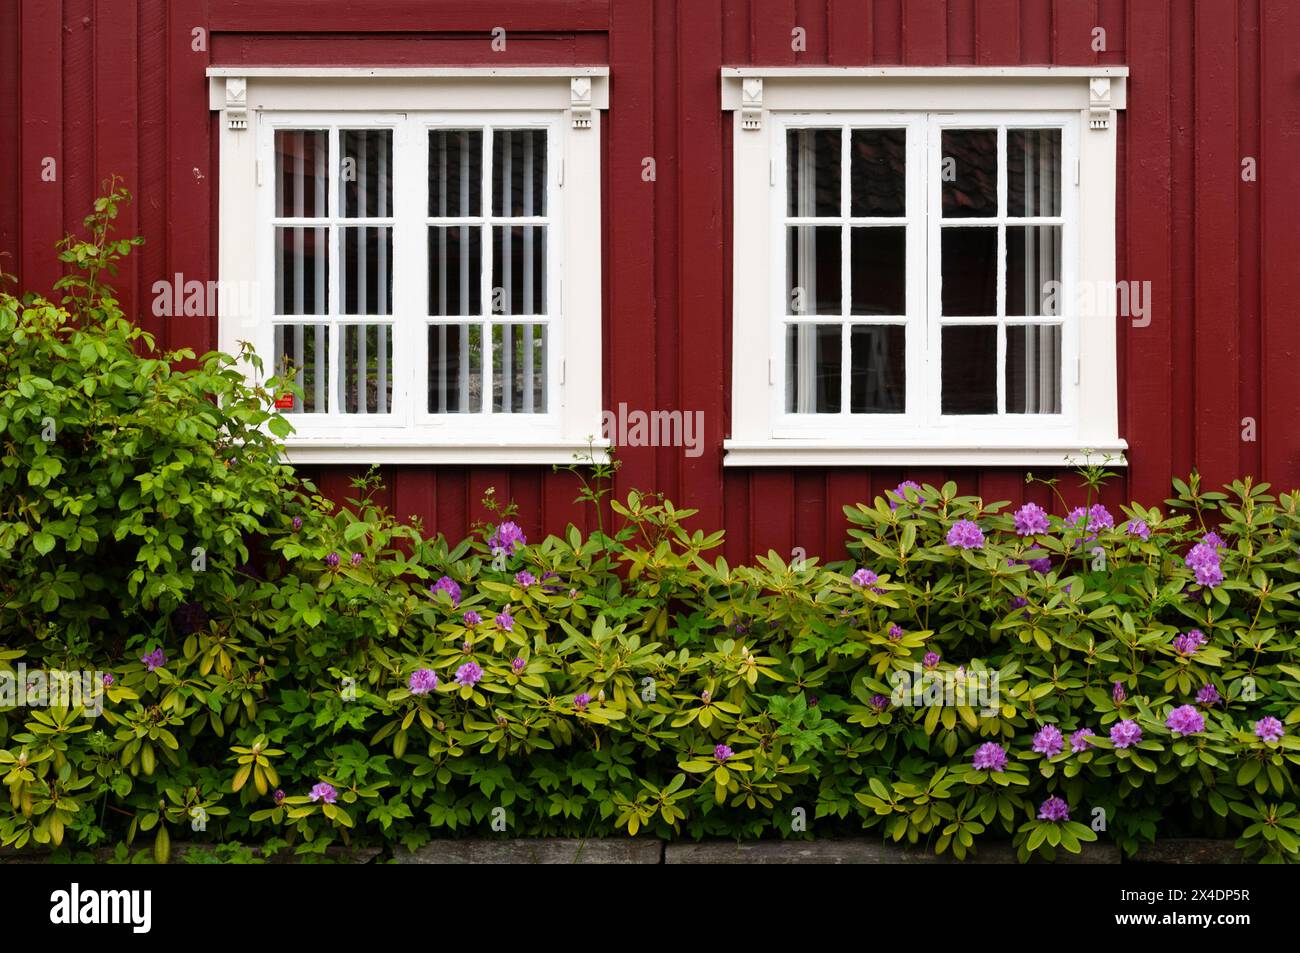 Rhododendron vor einem bunt bemalten Holzhaus in Mollenberg. Mollenberg, Trondheim, Norwegen. Stockfoto